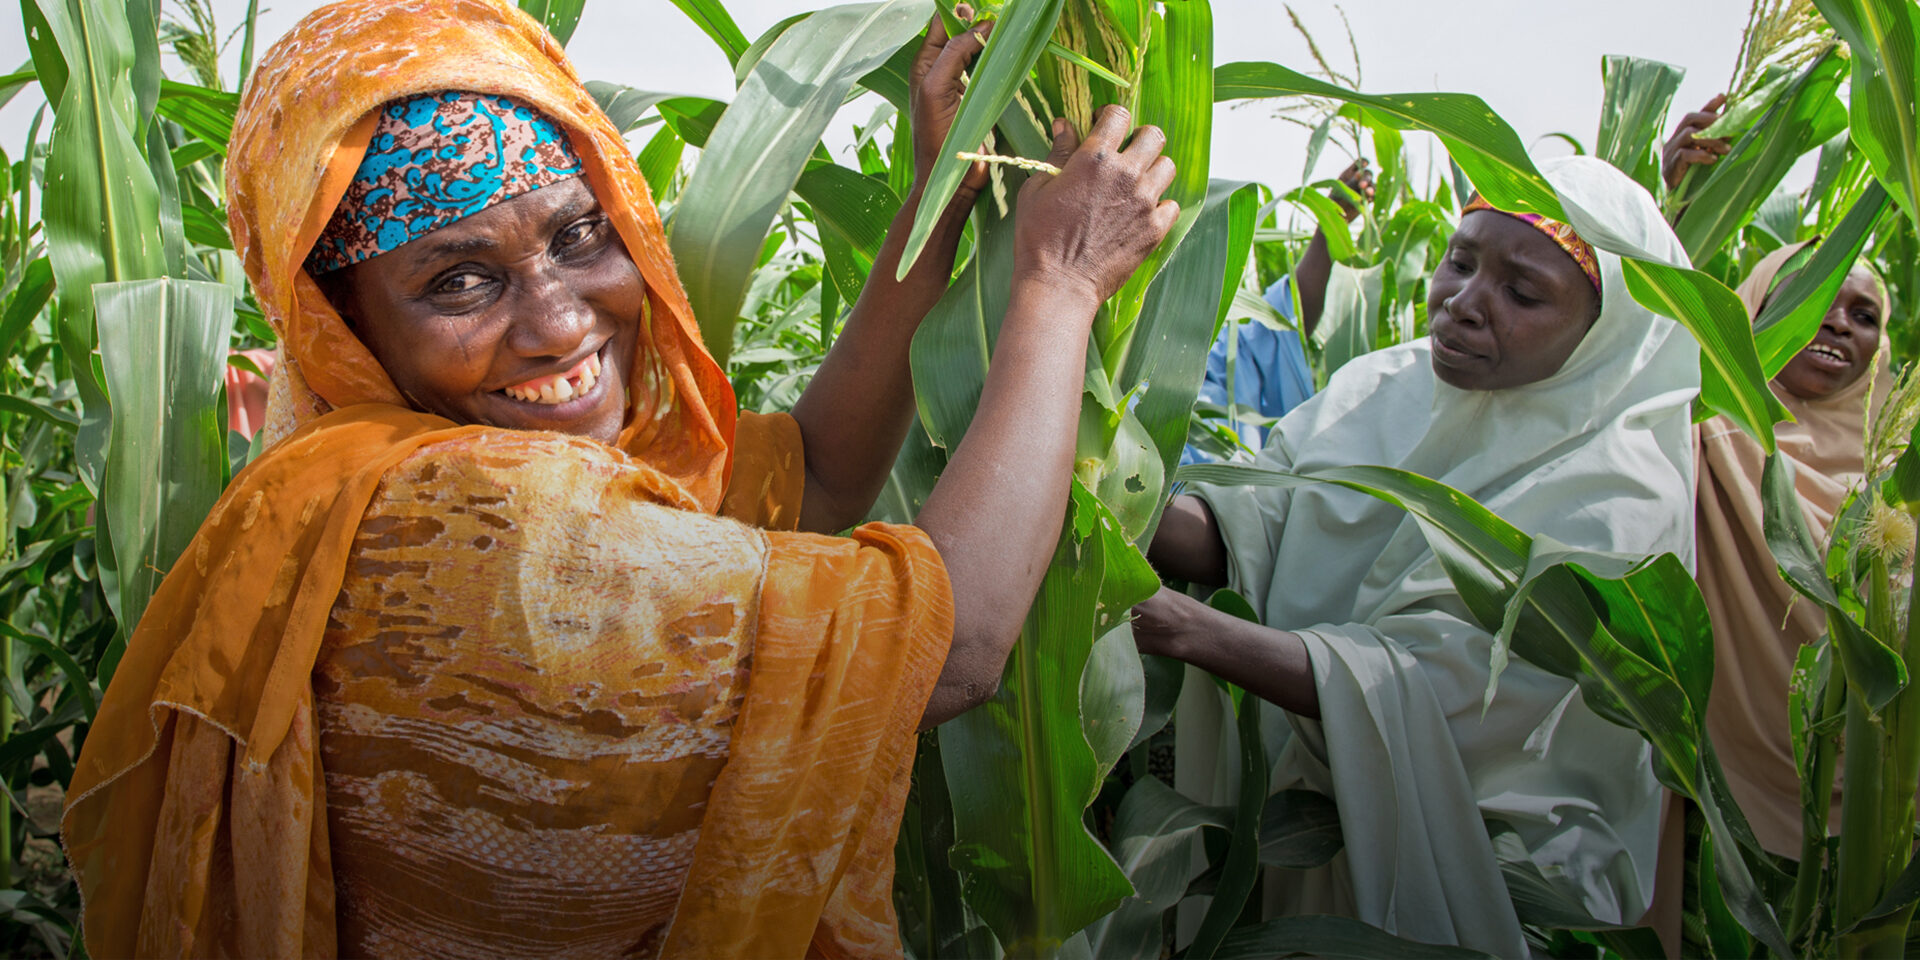 Women work in a corn field.